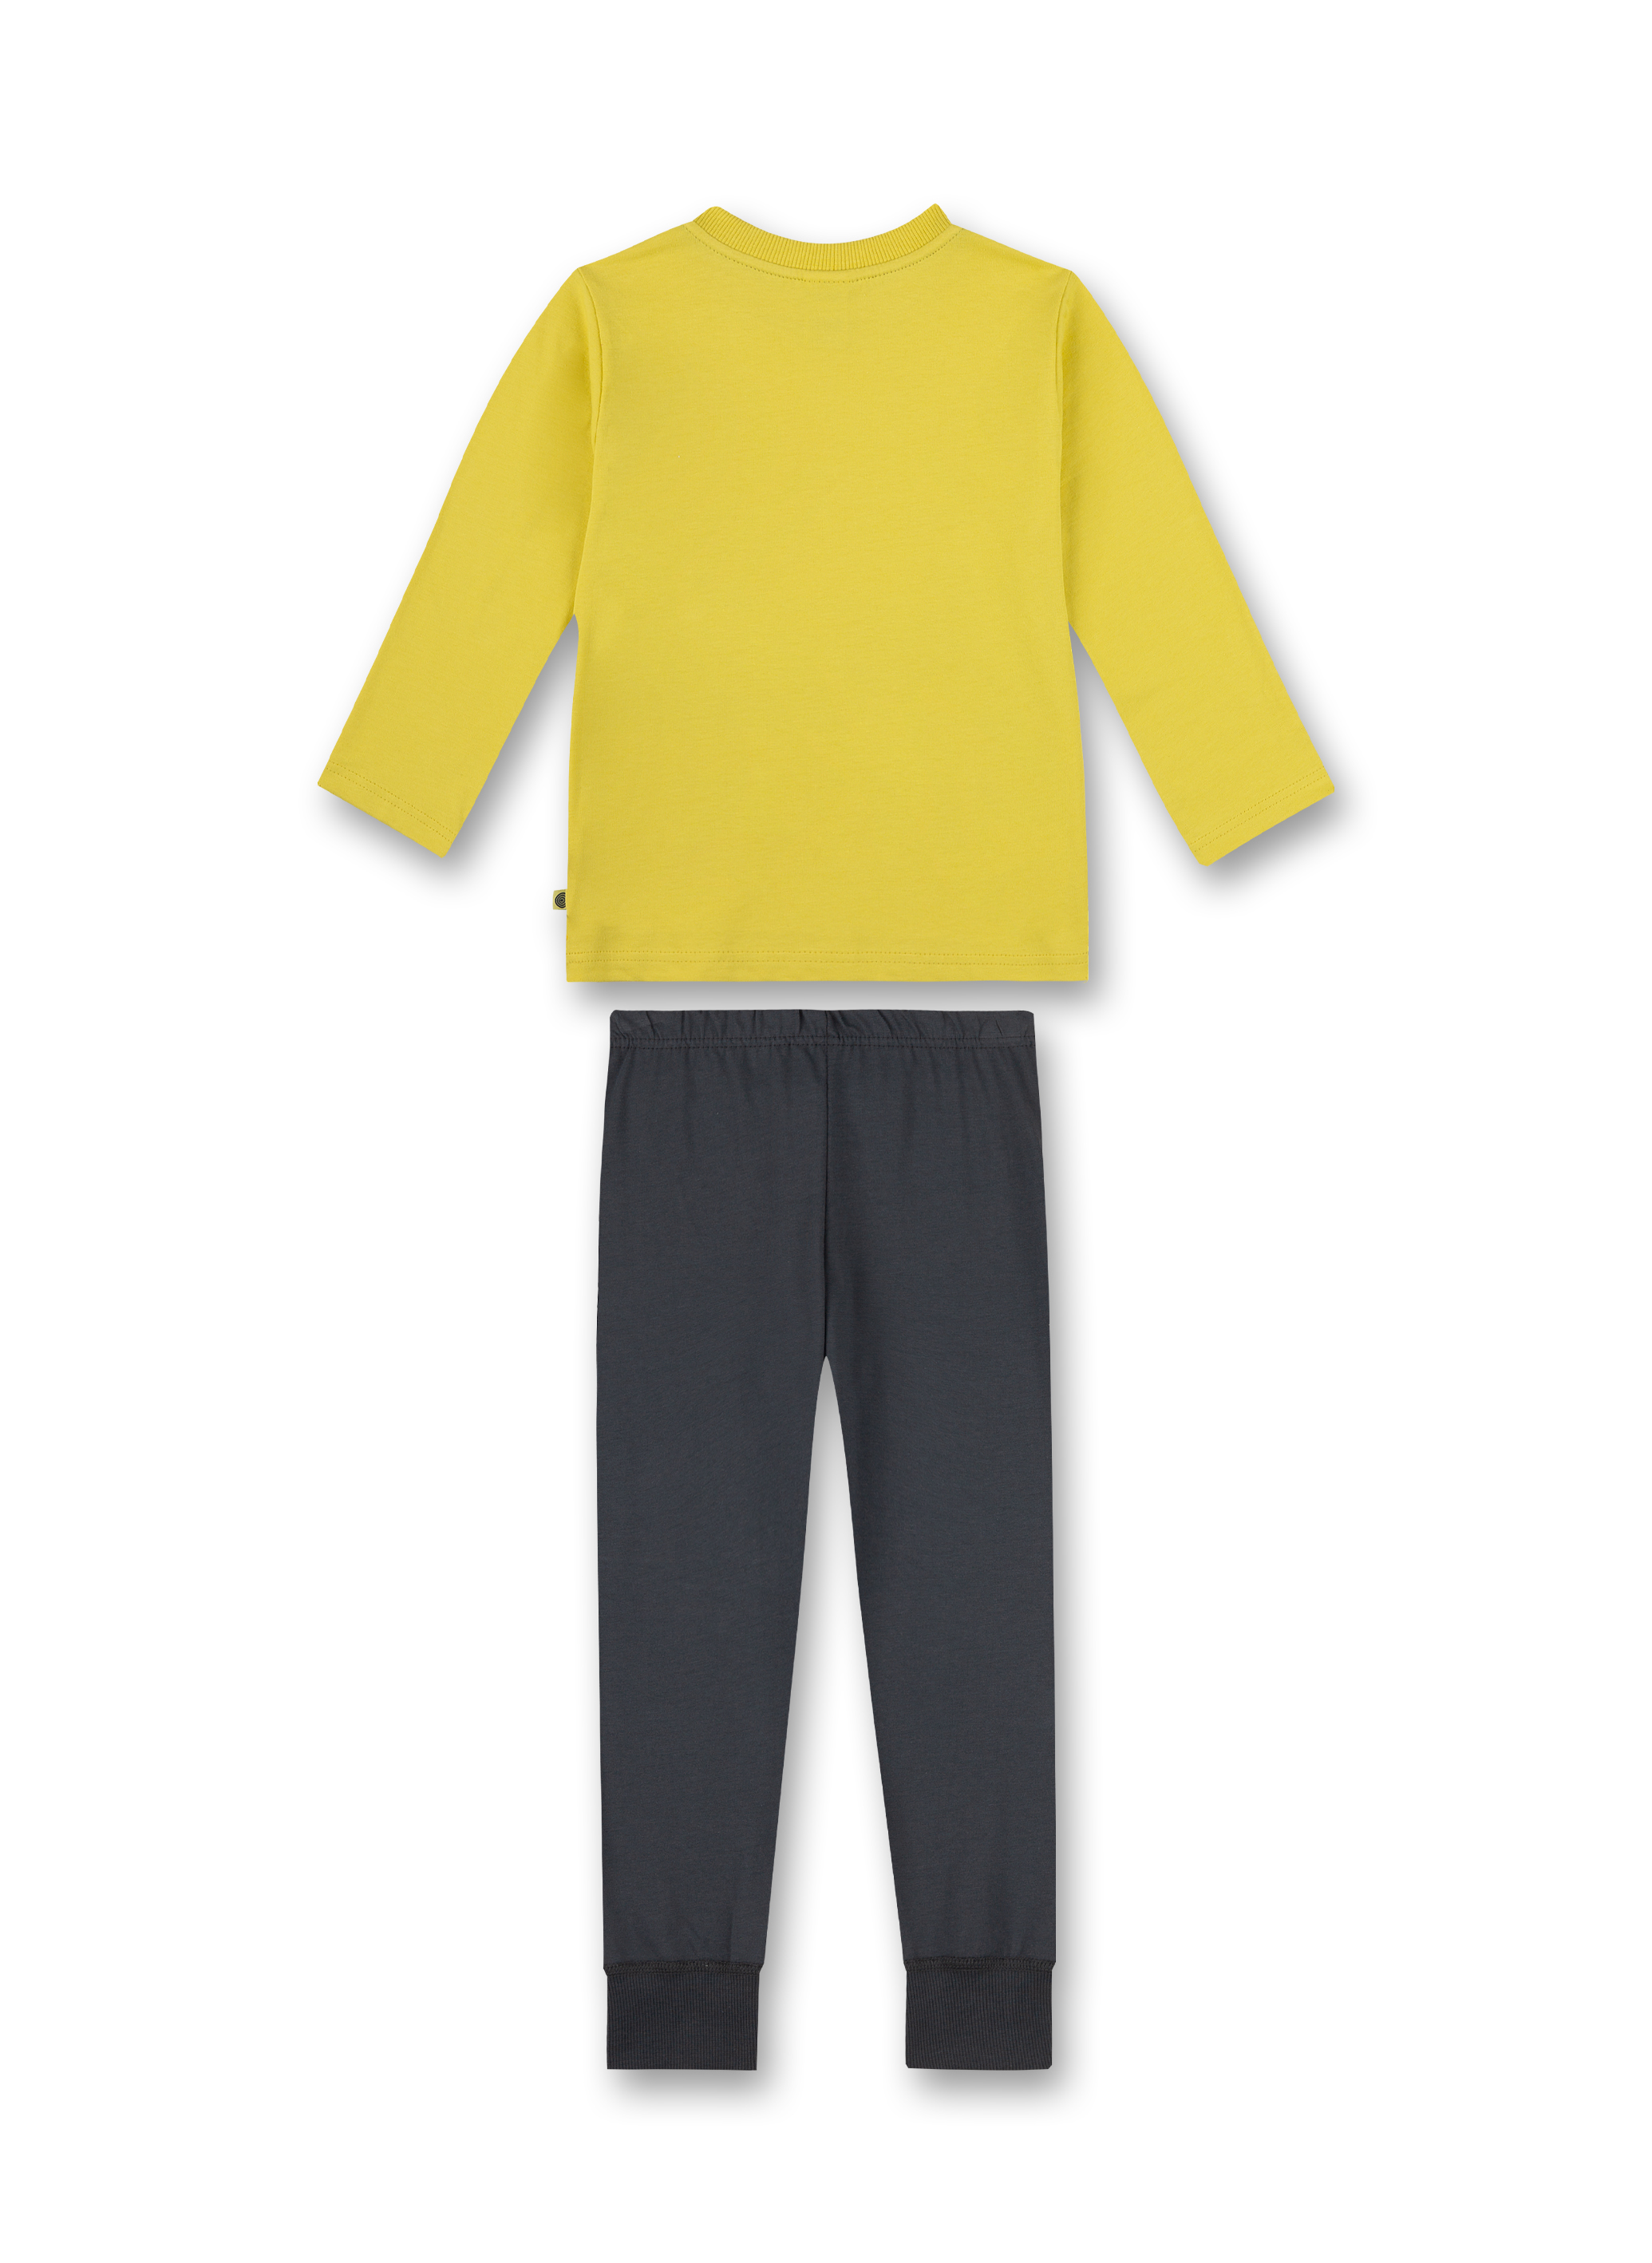 Jungen-Schlafanzug Gelb 